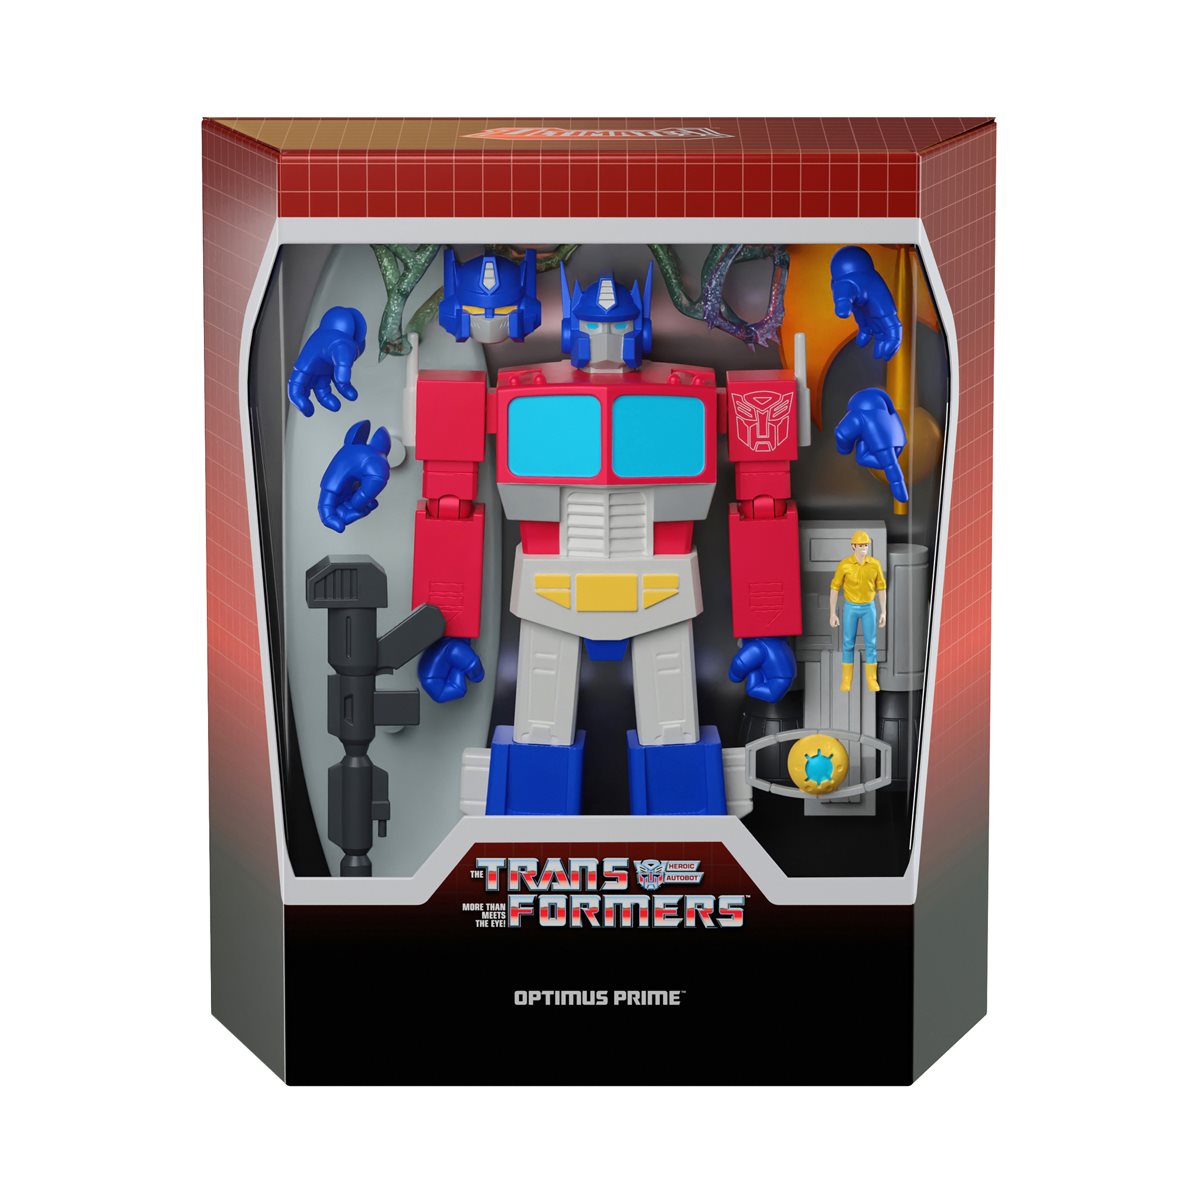 Transformers ultimate Super7 86fc0ea6ab6b4d1fb94009c13d13ac3exl